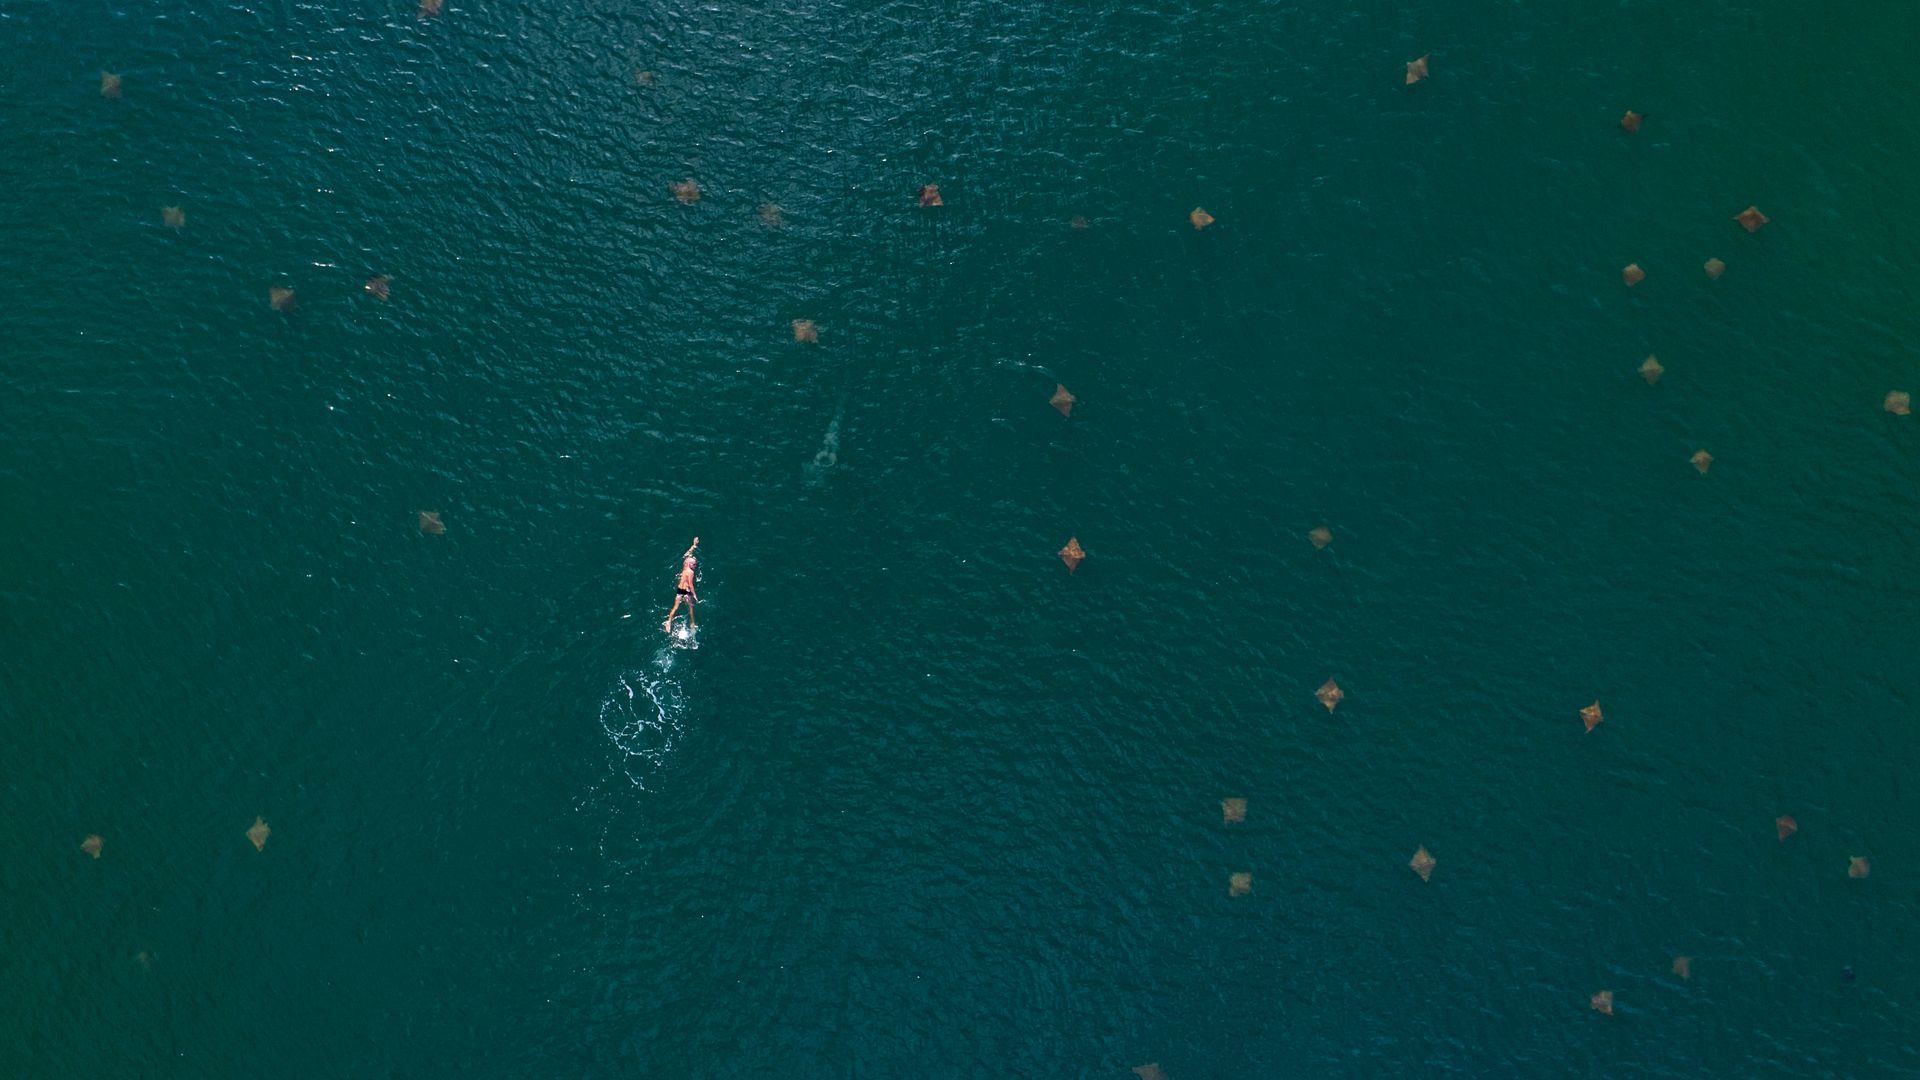 Homem nadando em meio a arraias, registro da Baía das Tartarugas, em Vitória